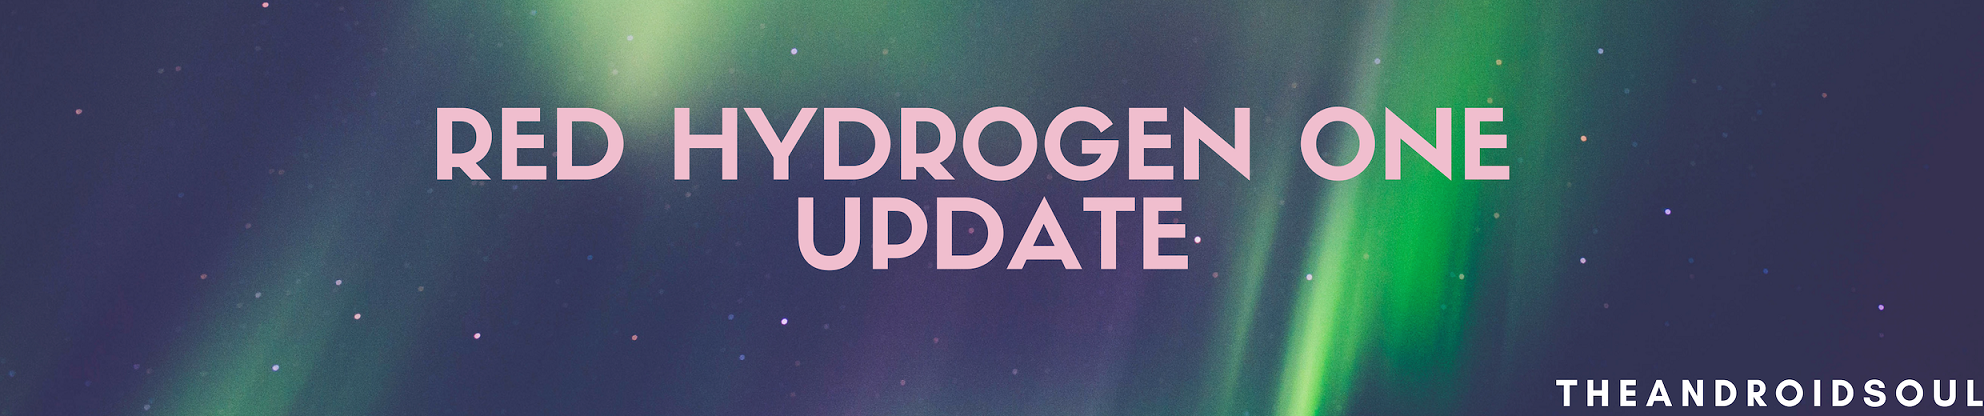 Red hydrogen one update